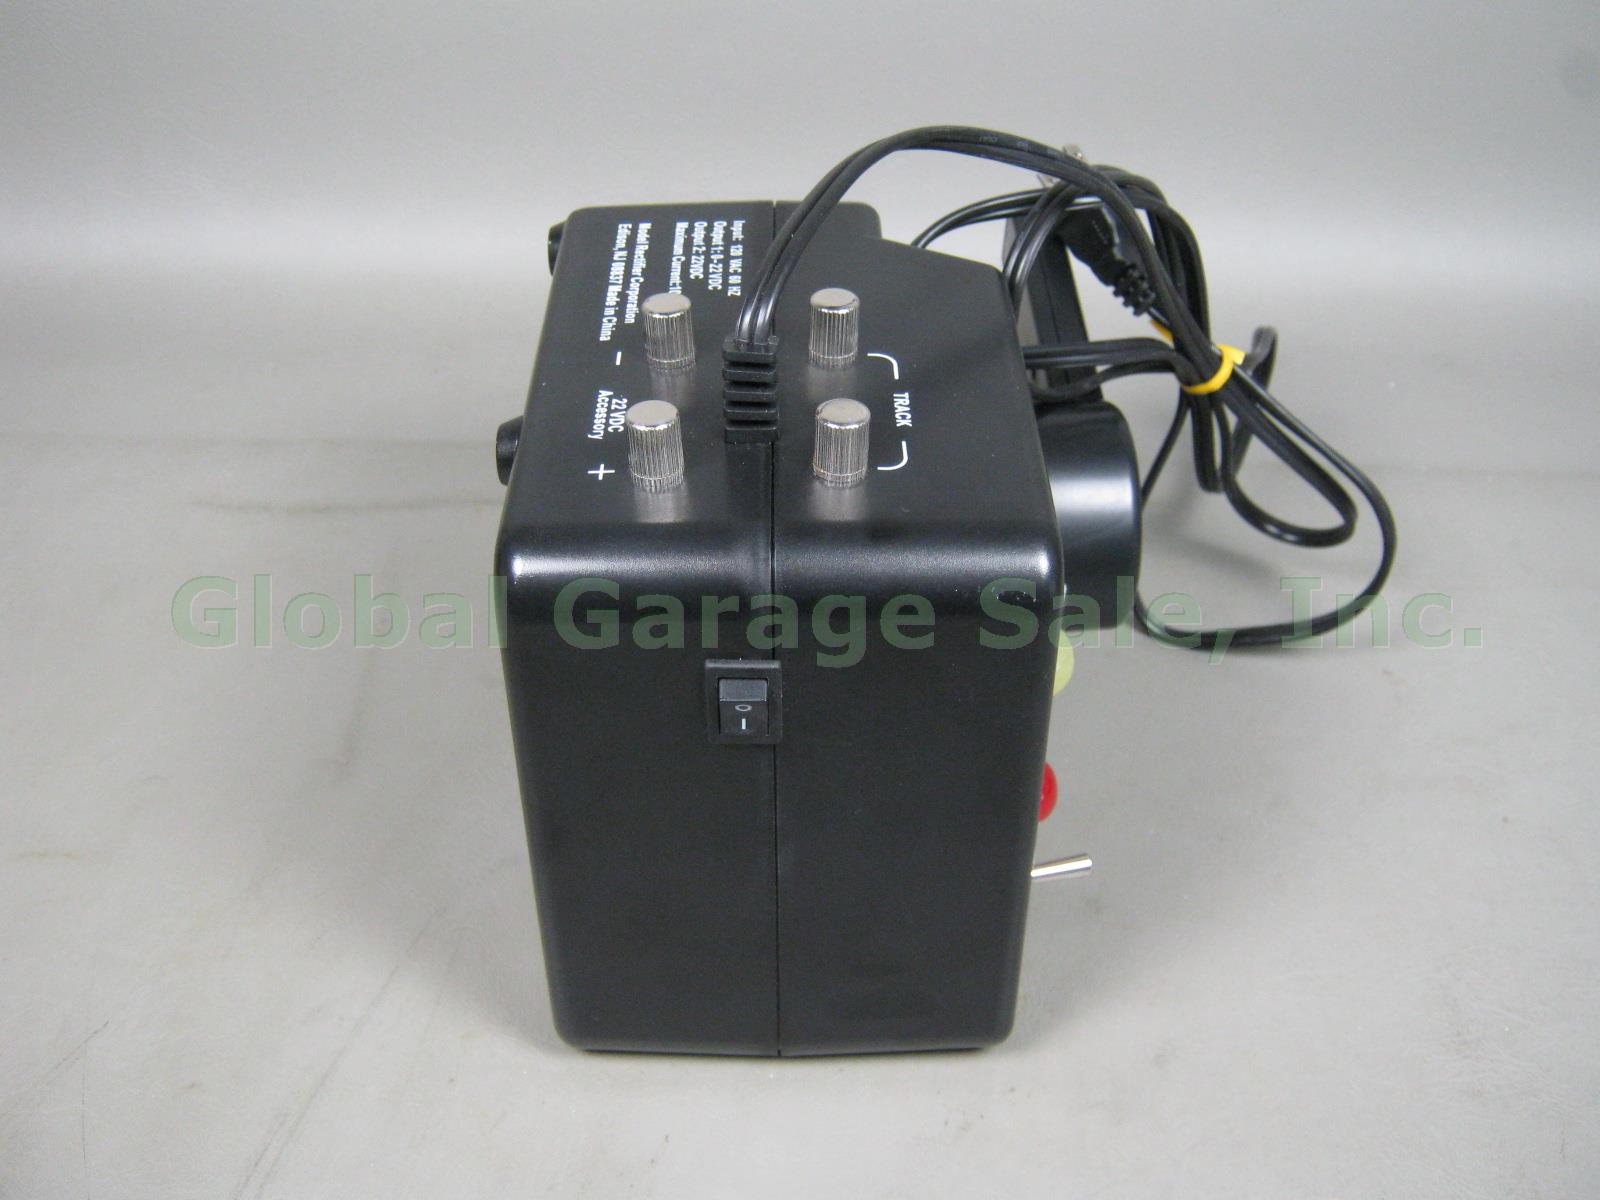 Model Rectifier Corporation MRC Power G AG 990 10 Amp DC Power Pack Transformer 4